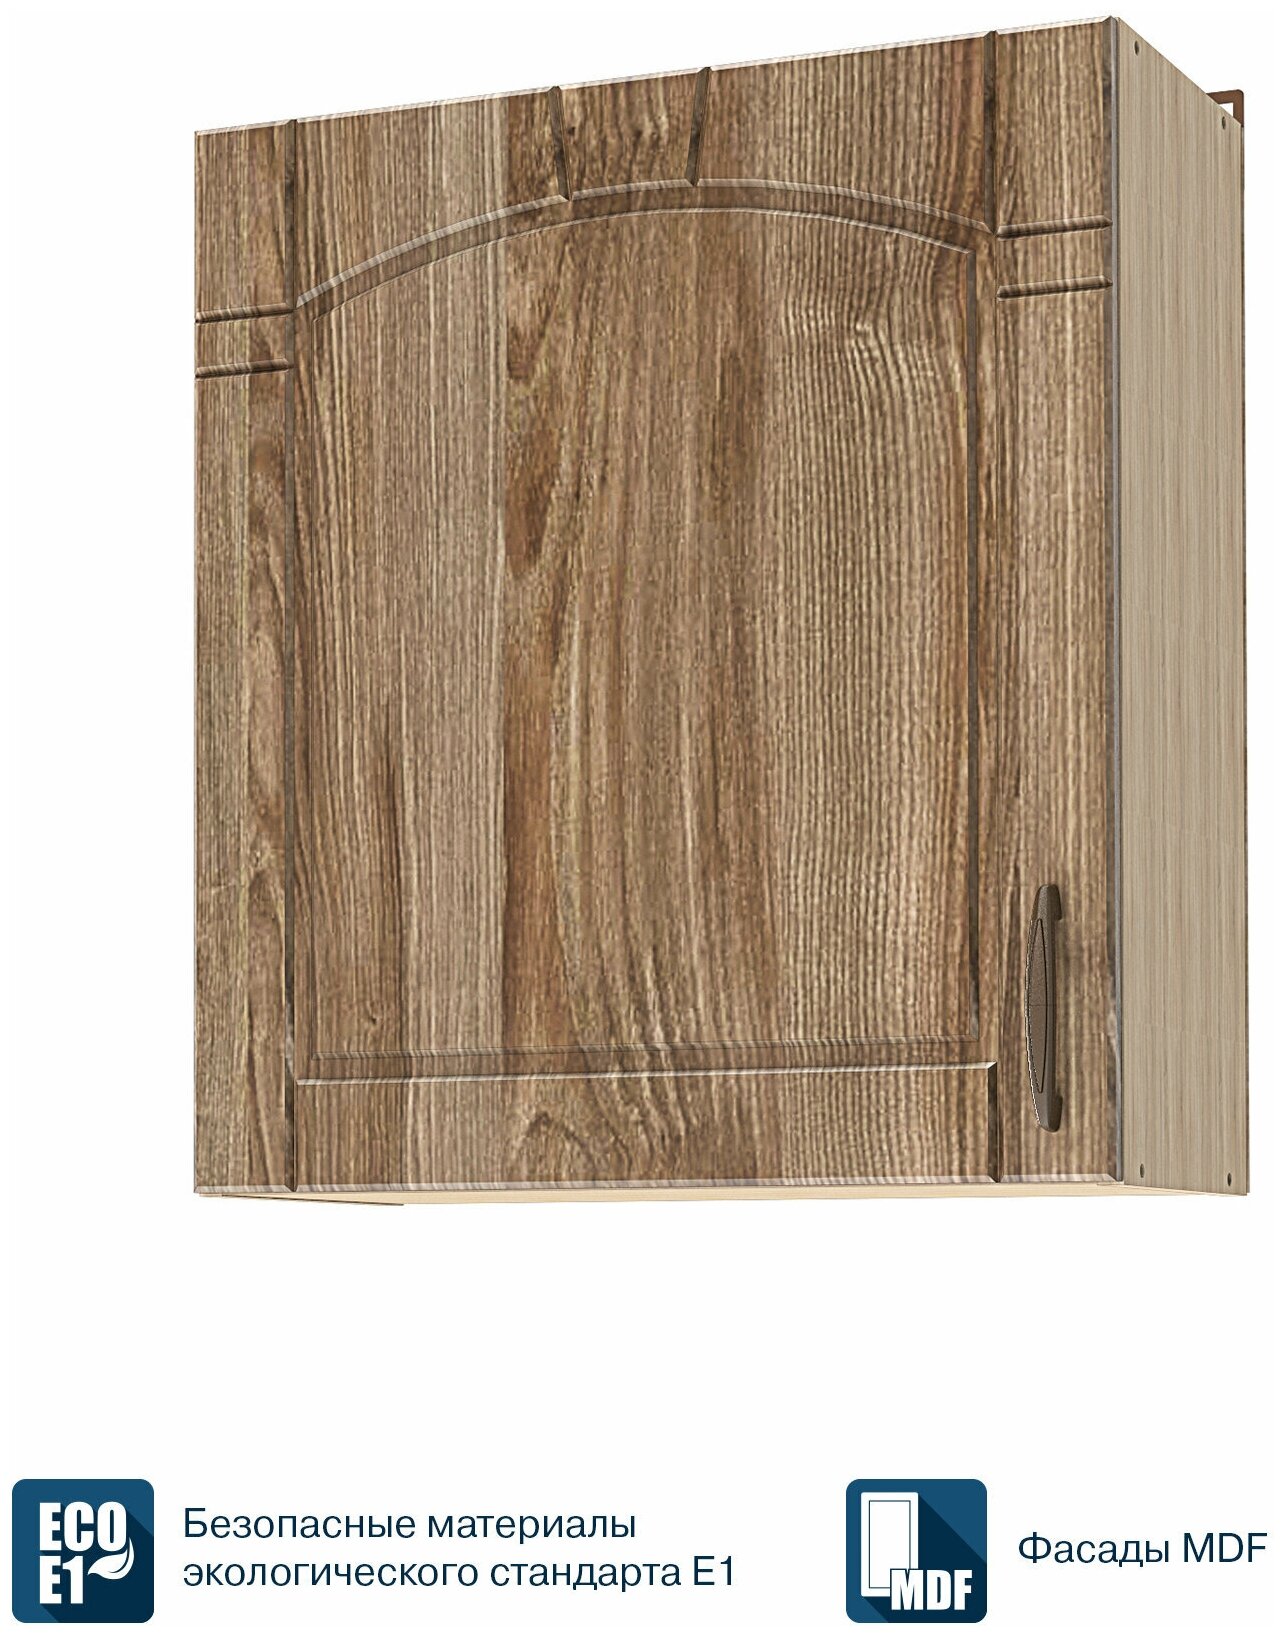 Кухонный модуль навесной шкаф Beneli камилла Каштан светлый/Дуб бардолино, фасады МДФ, 60х29х68см, 1шт.